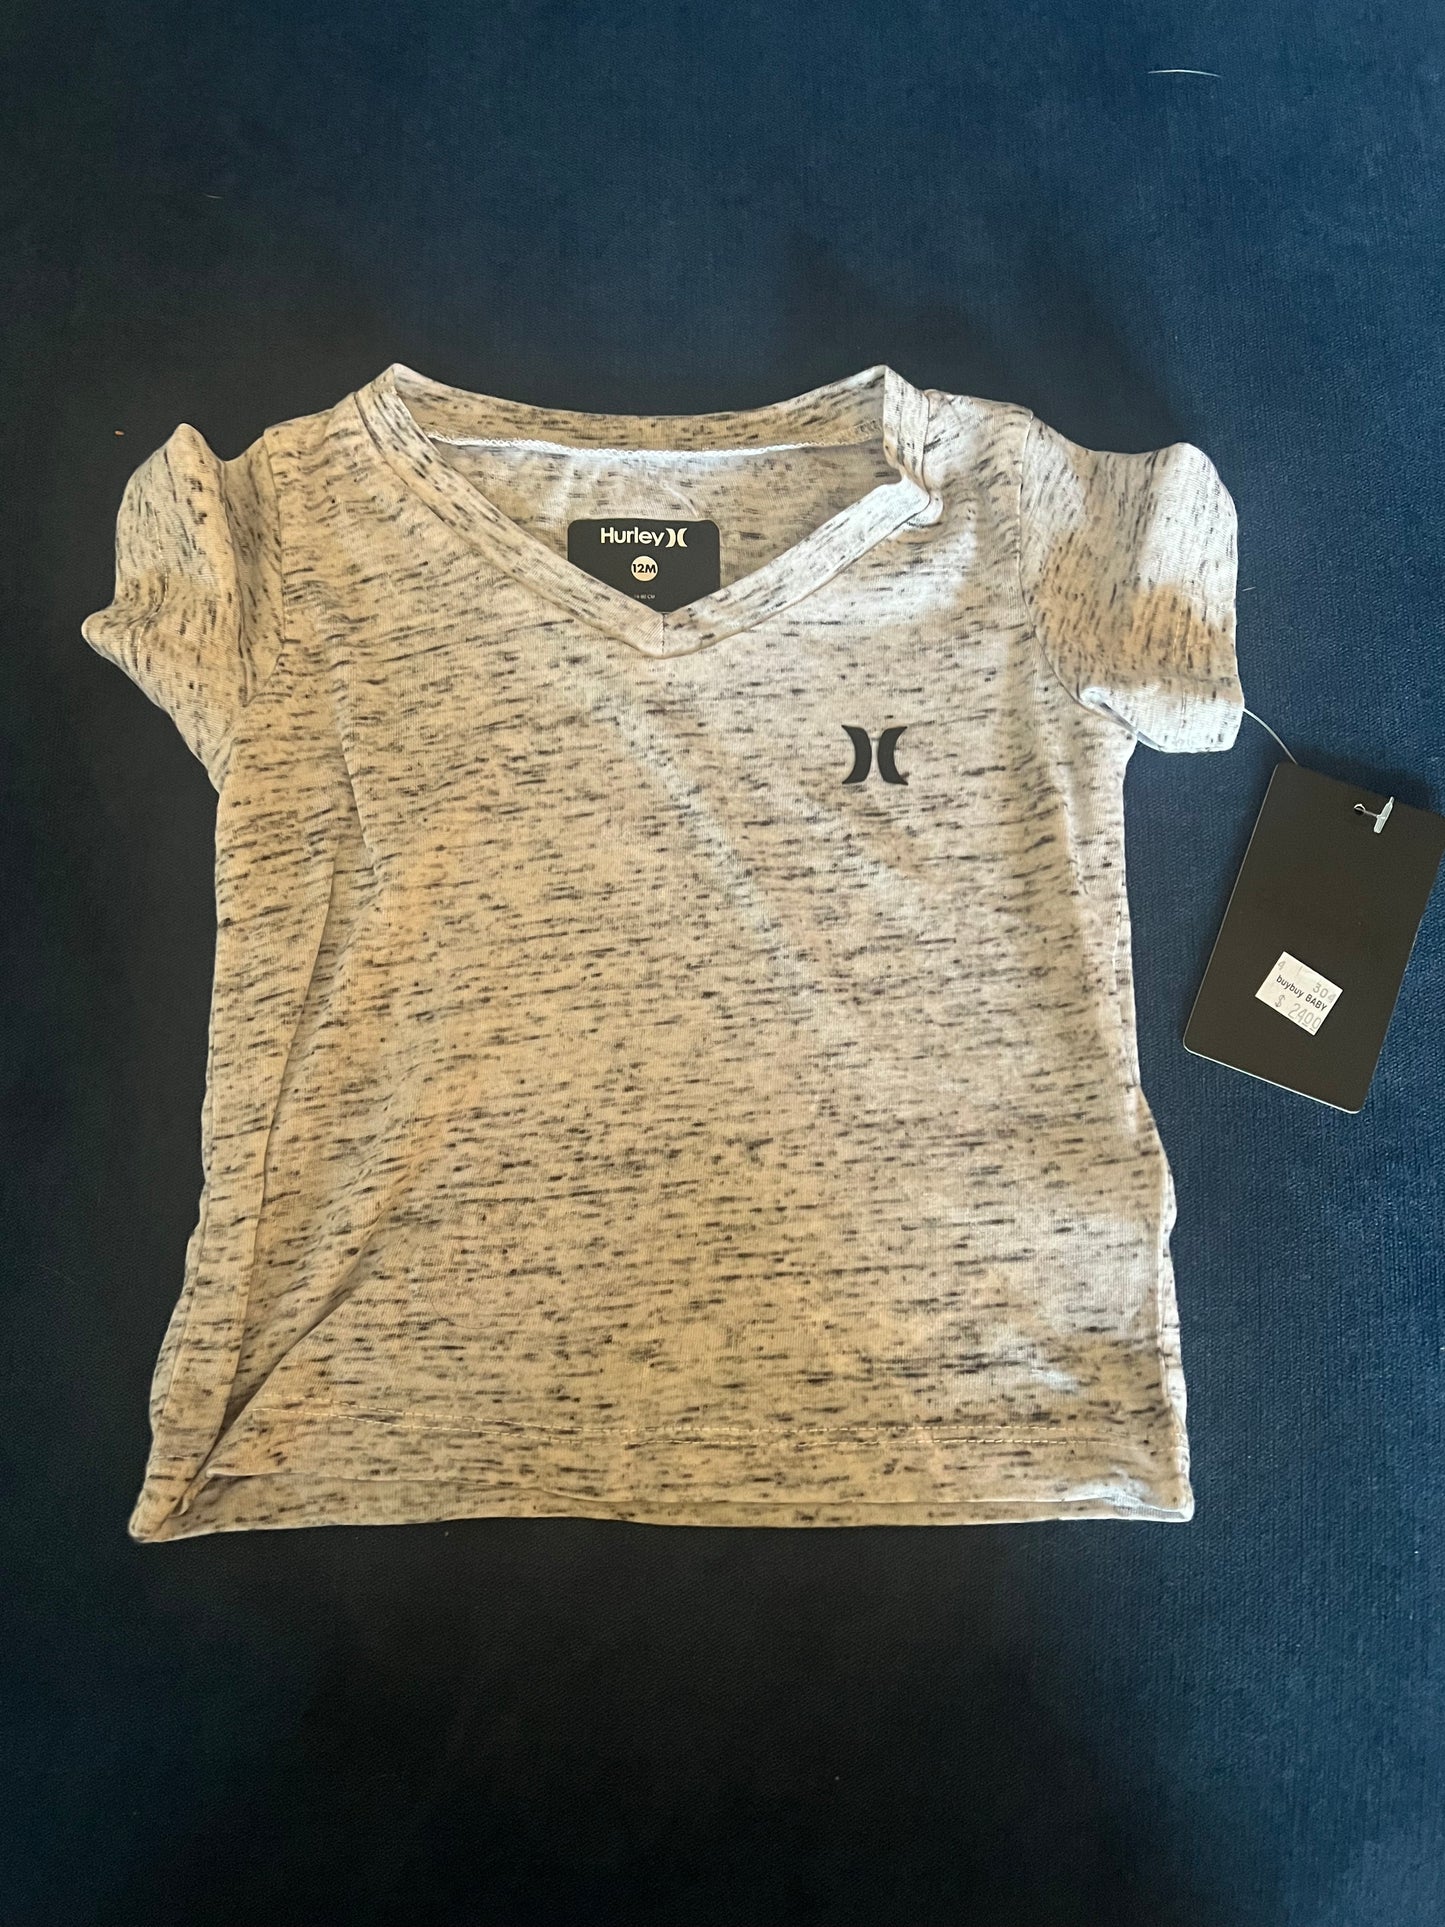 Hurley T shirt - 12 Months